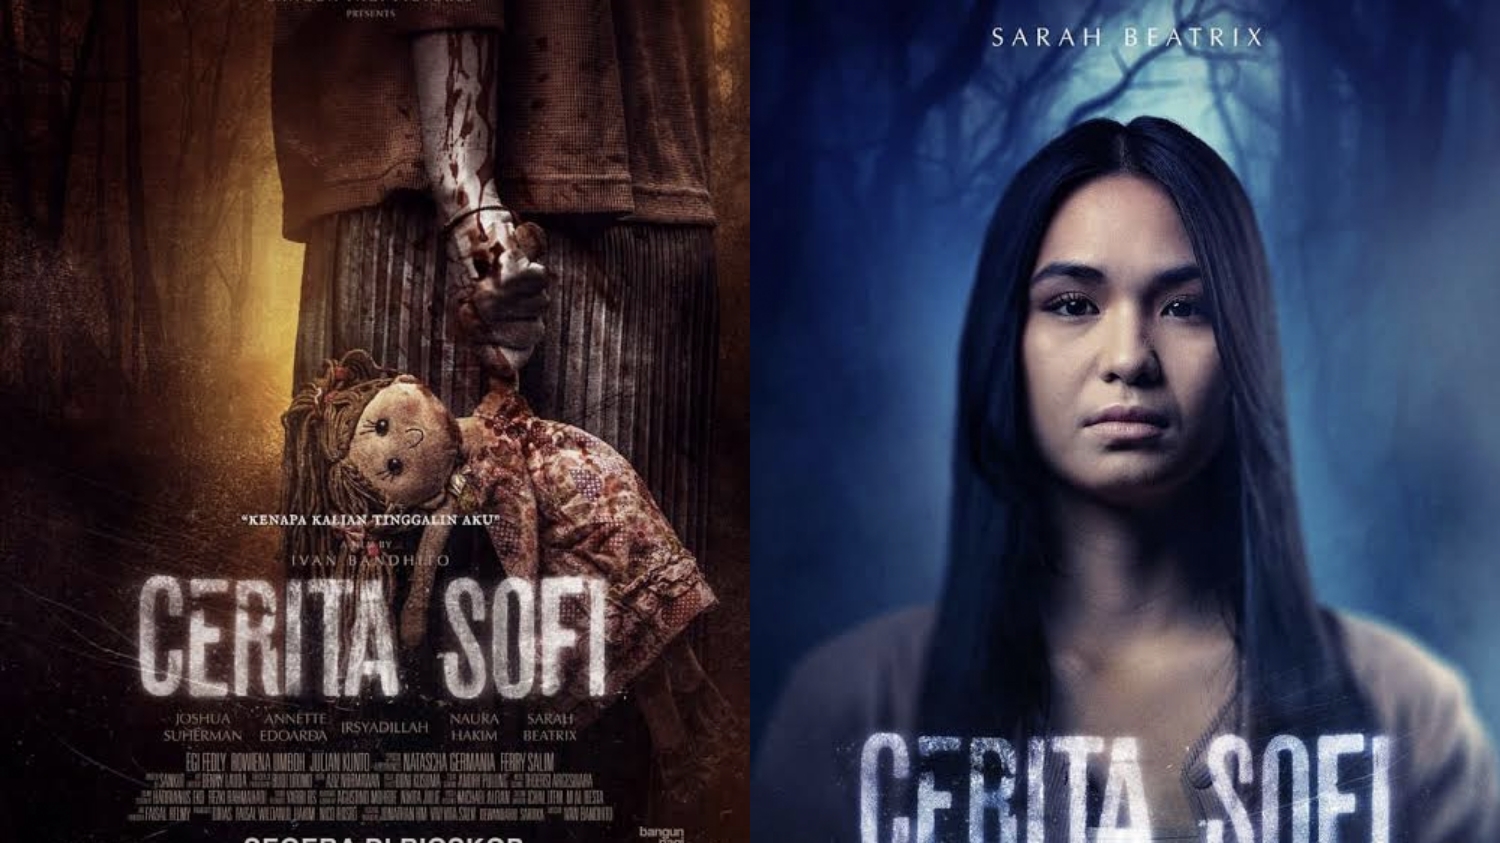 Film Horor Cerita Sofi yang Digarap oleh Bangun Pagi Pictures, Berikut Sinopsisnya